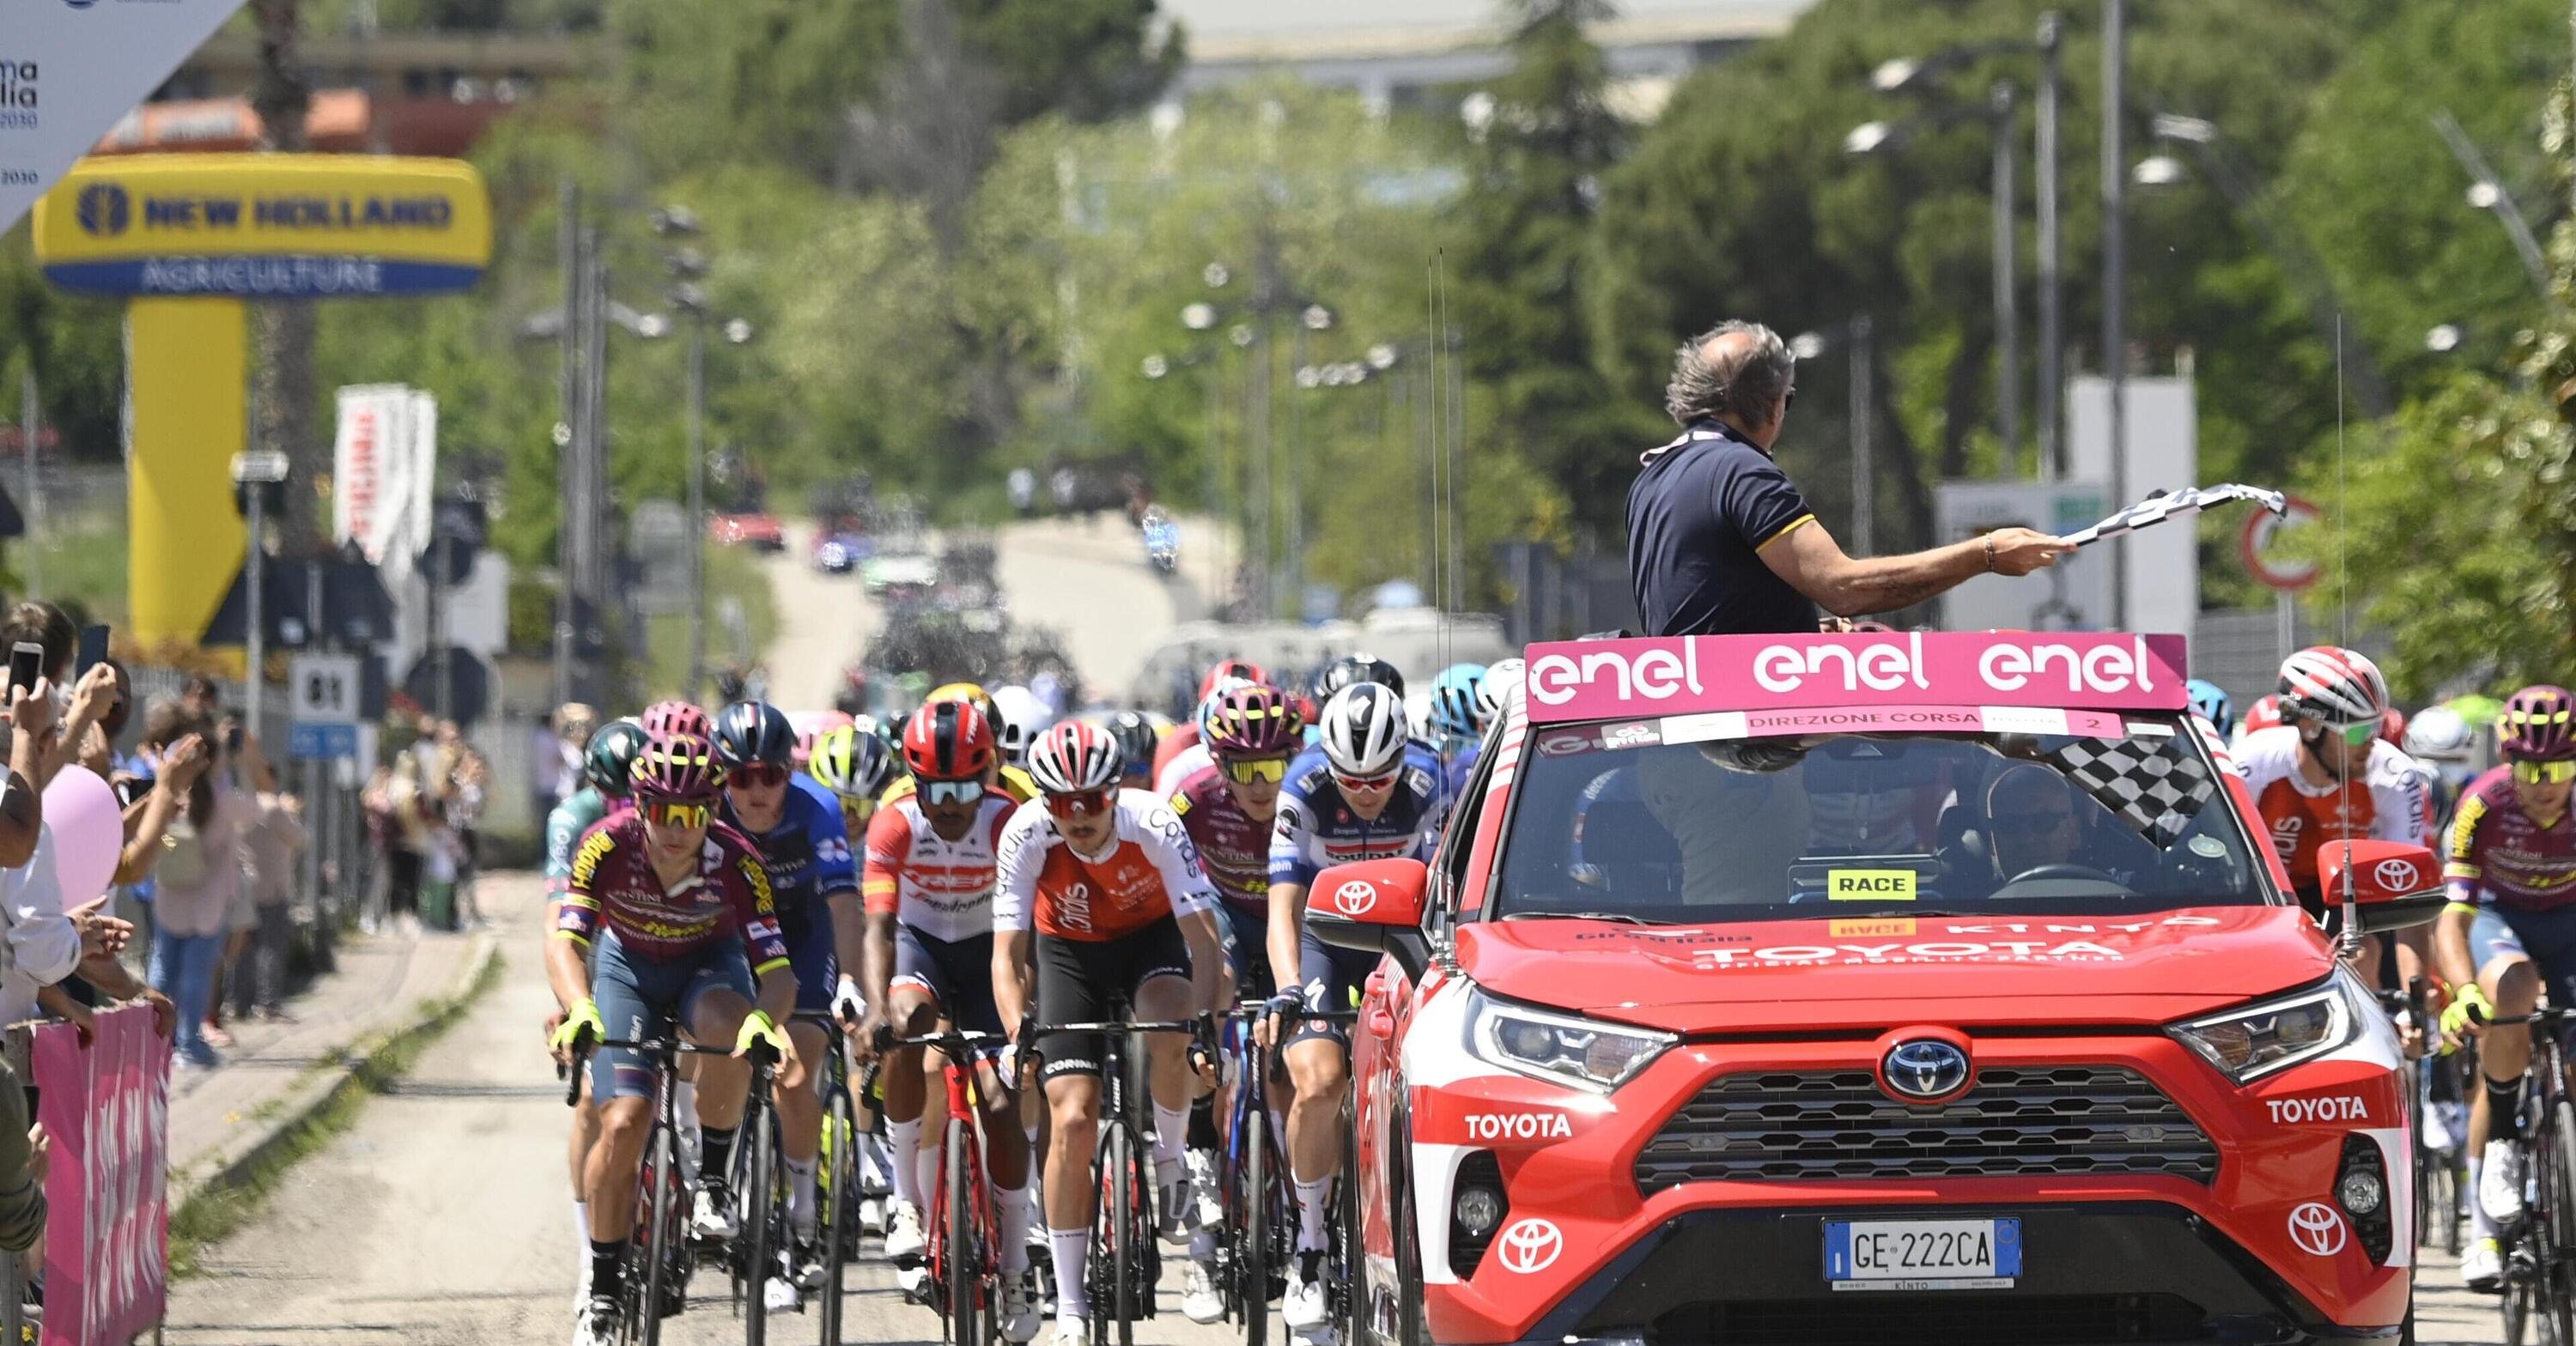 Toyota al Giro d'Italia: elettriche e ibride vincono tutte le tappe